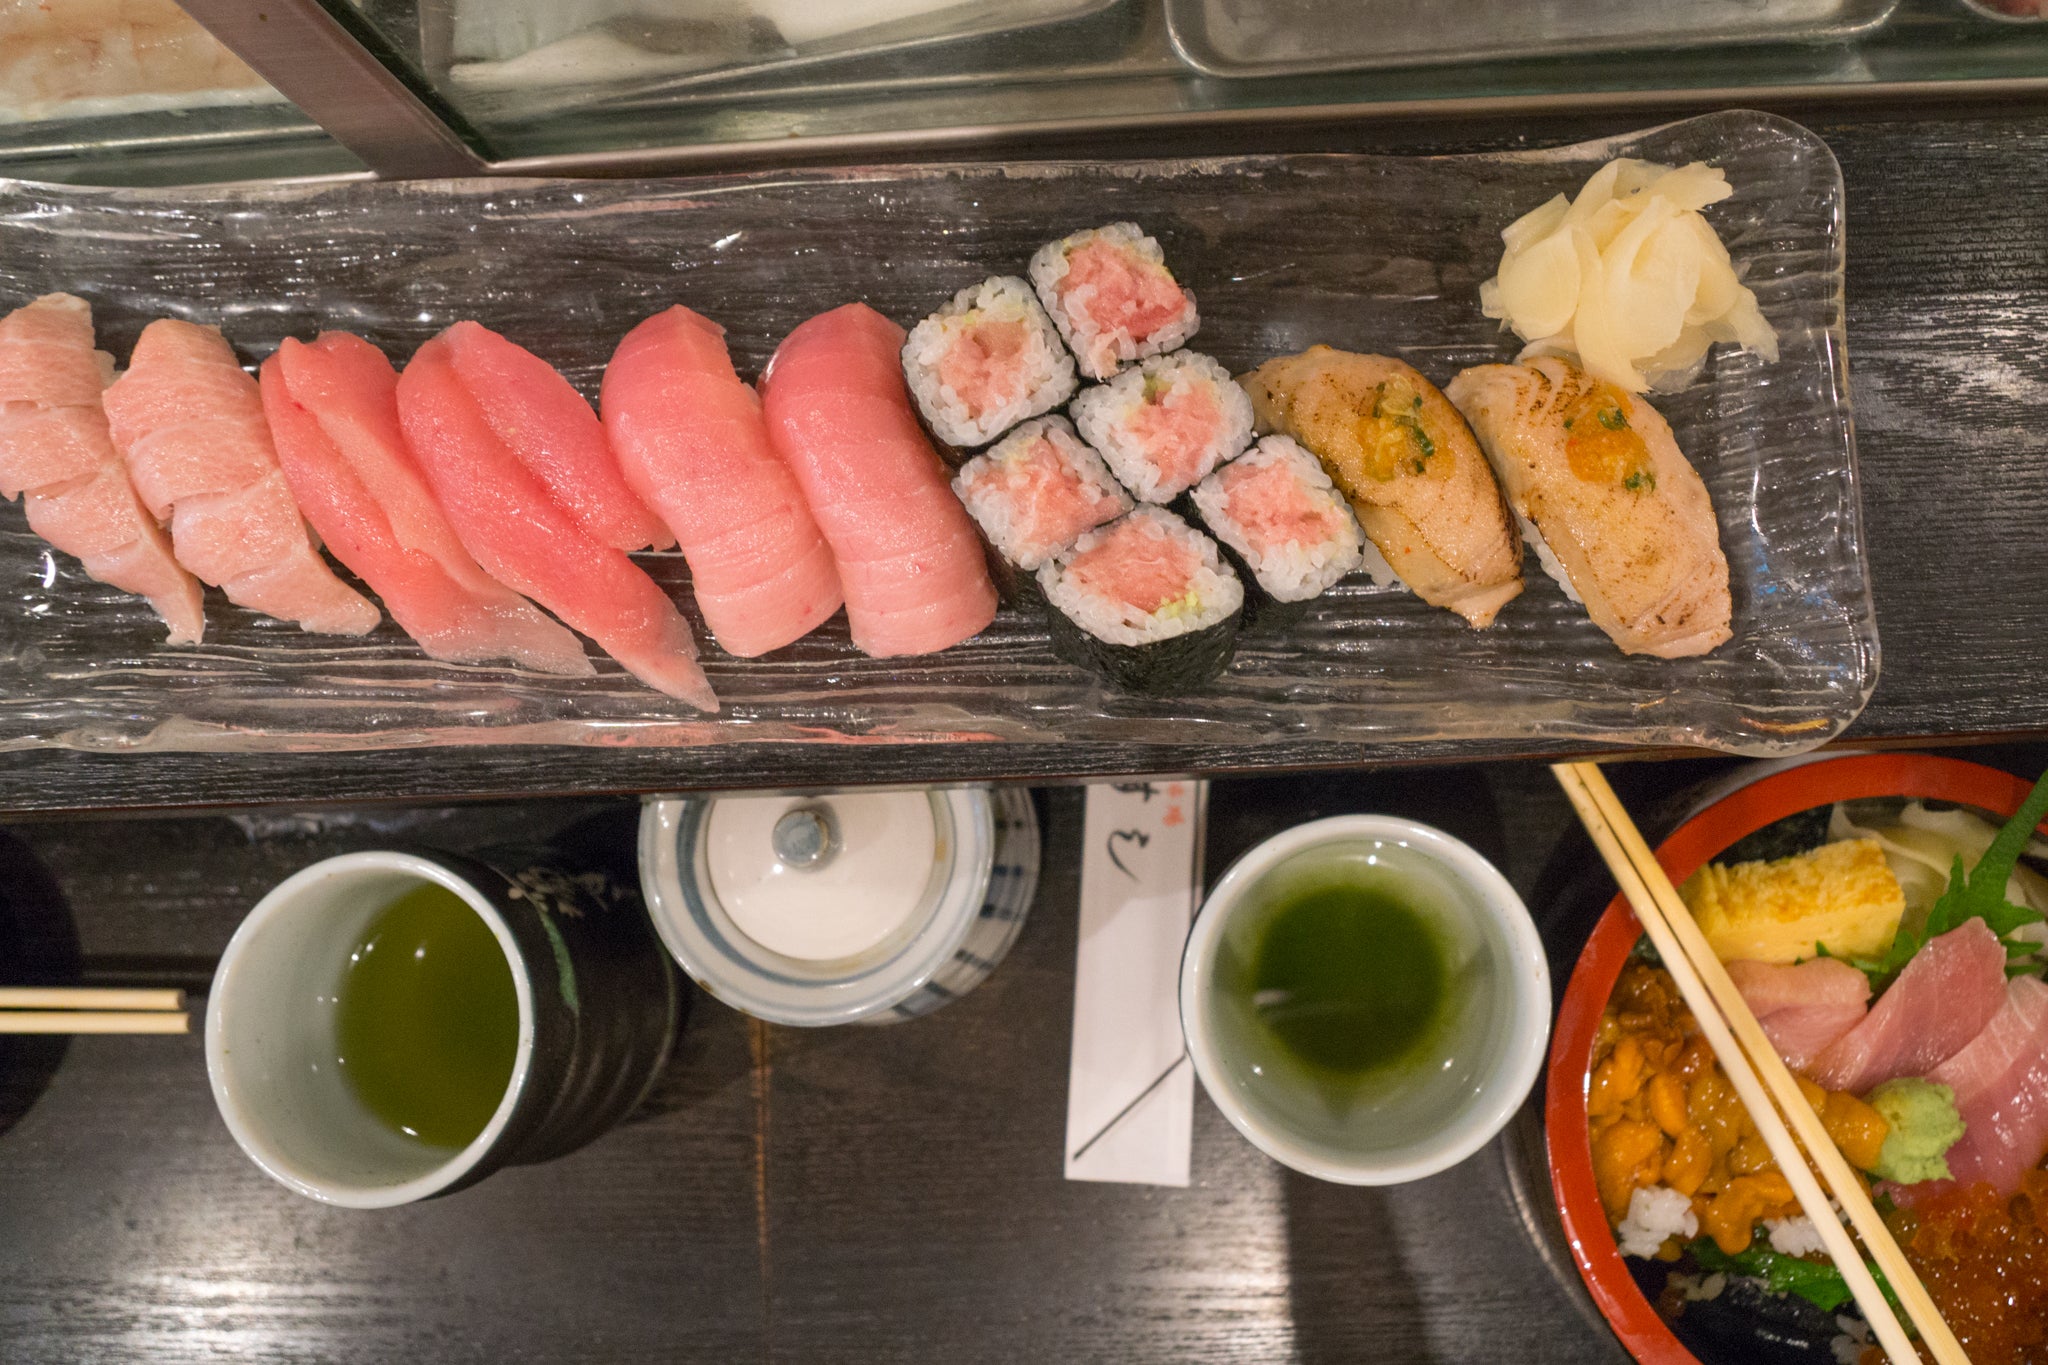  RecessAbroad Tsukiji Fish Market and Sushi Breakfast